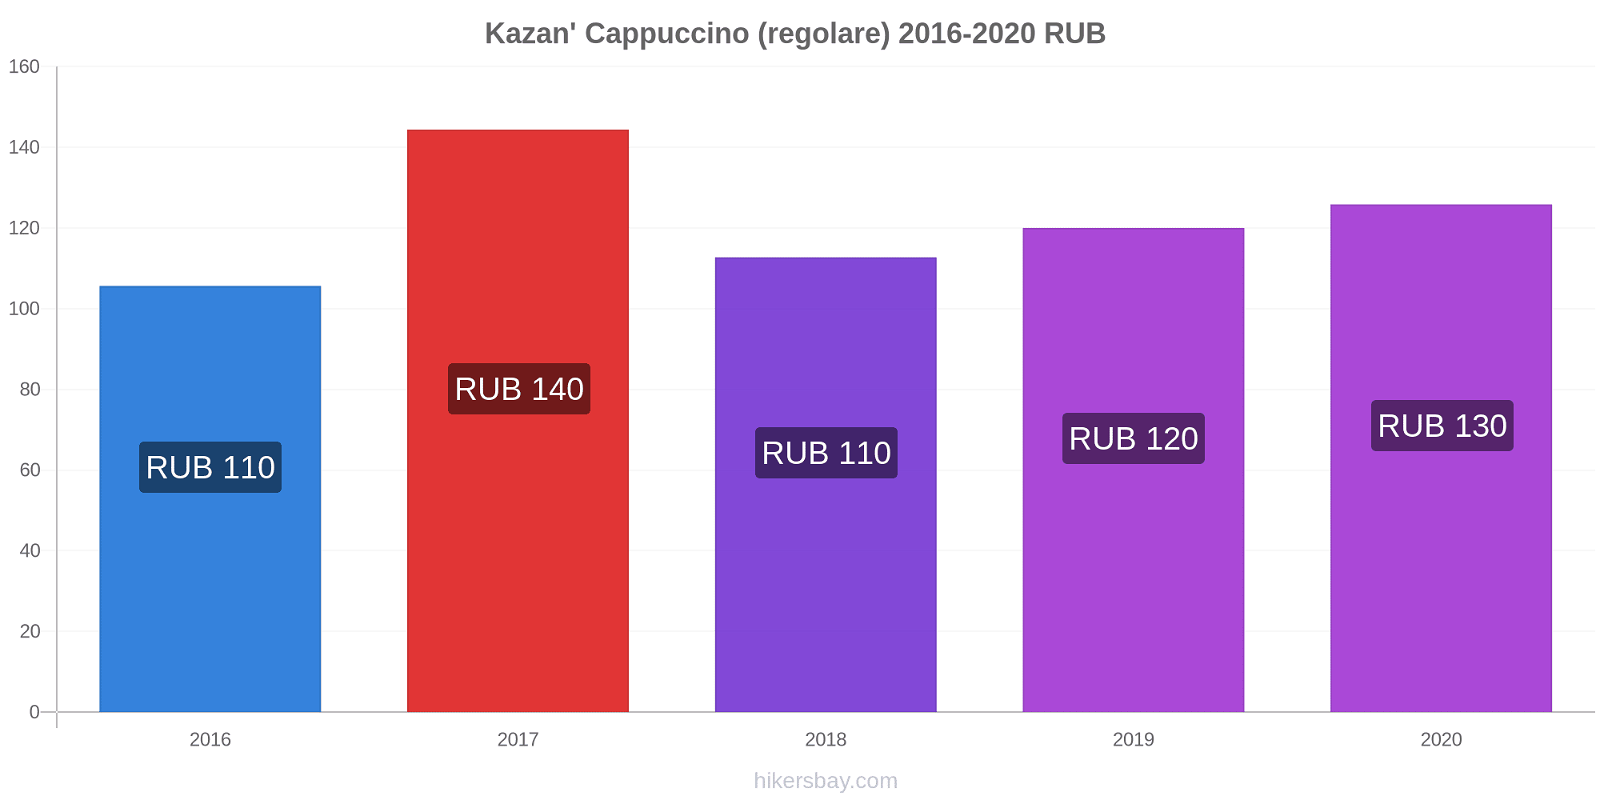 Kazan' variazioni di prezzo Cappuccino (normale) hikersbay.com